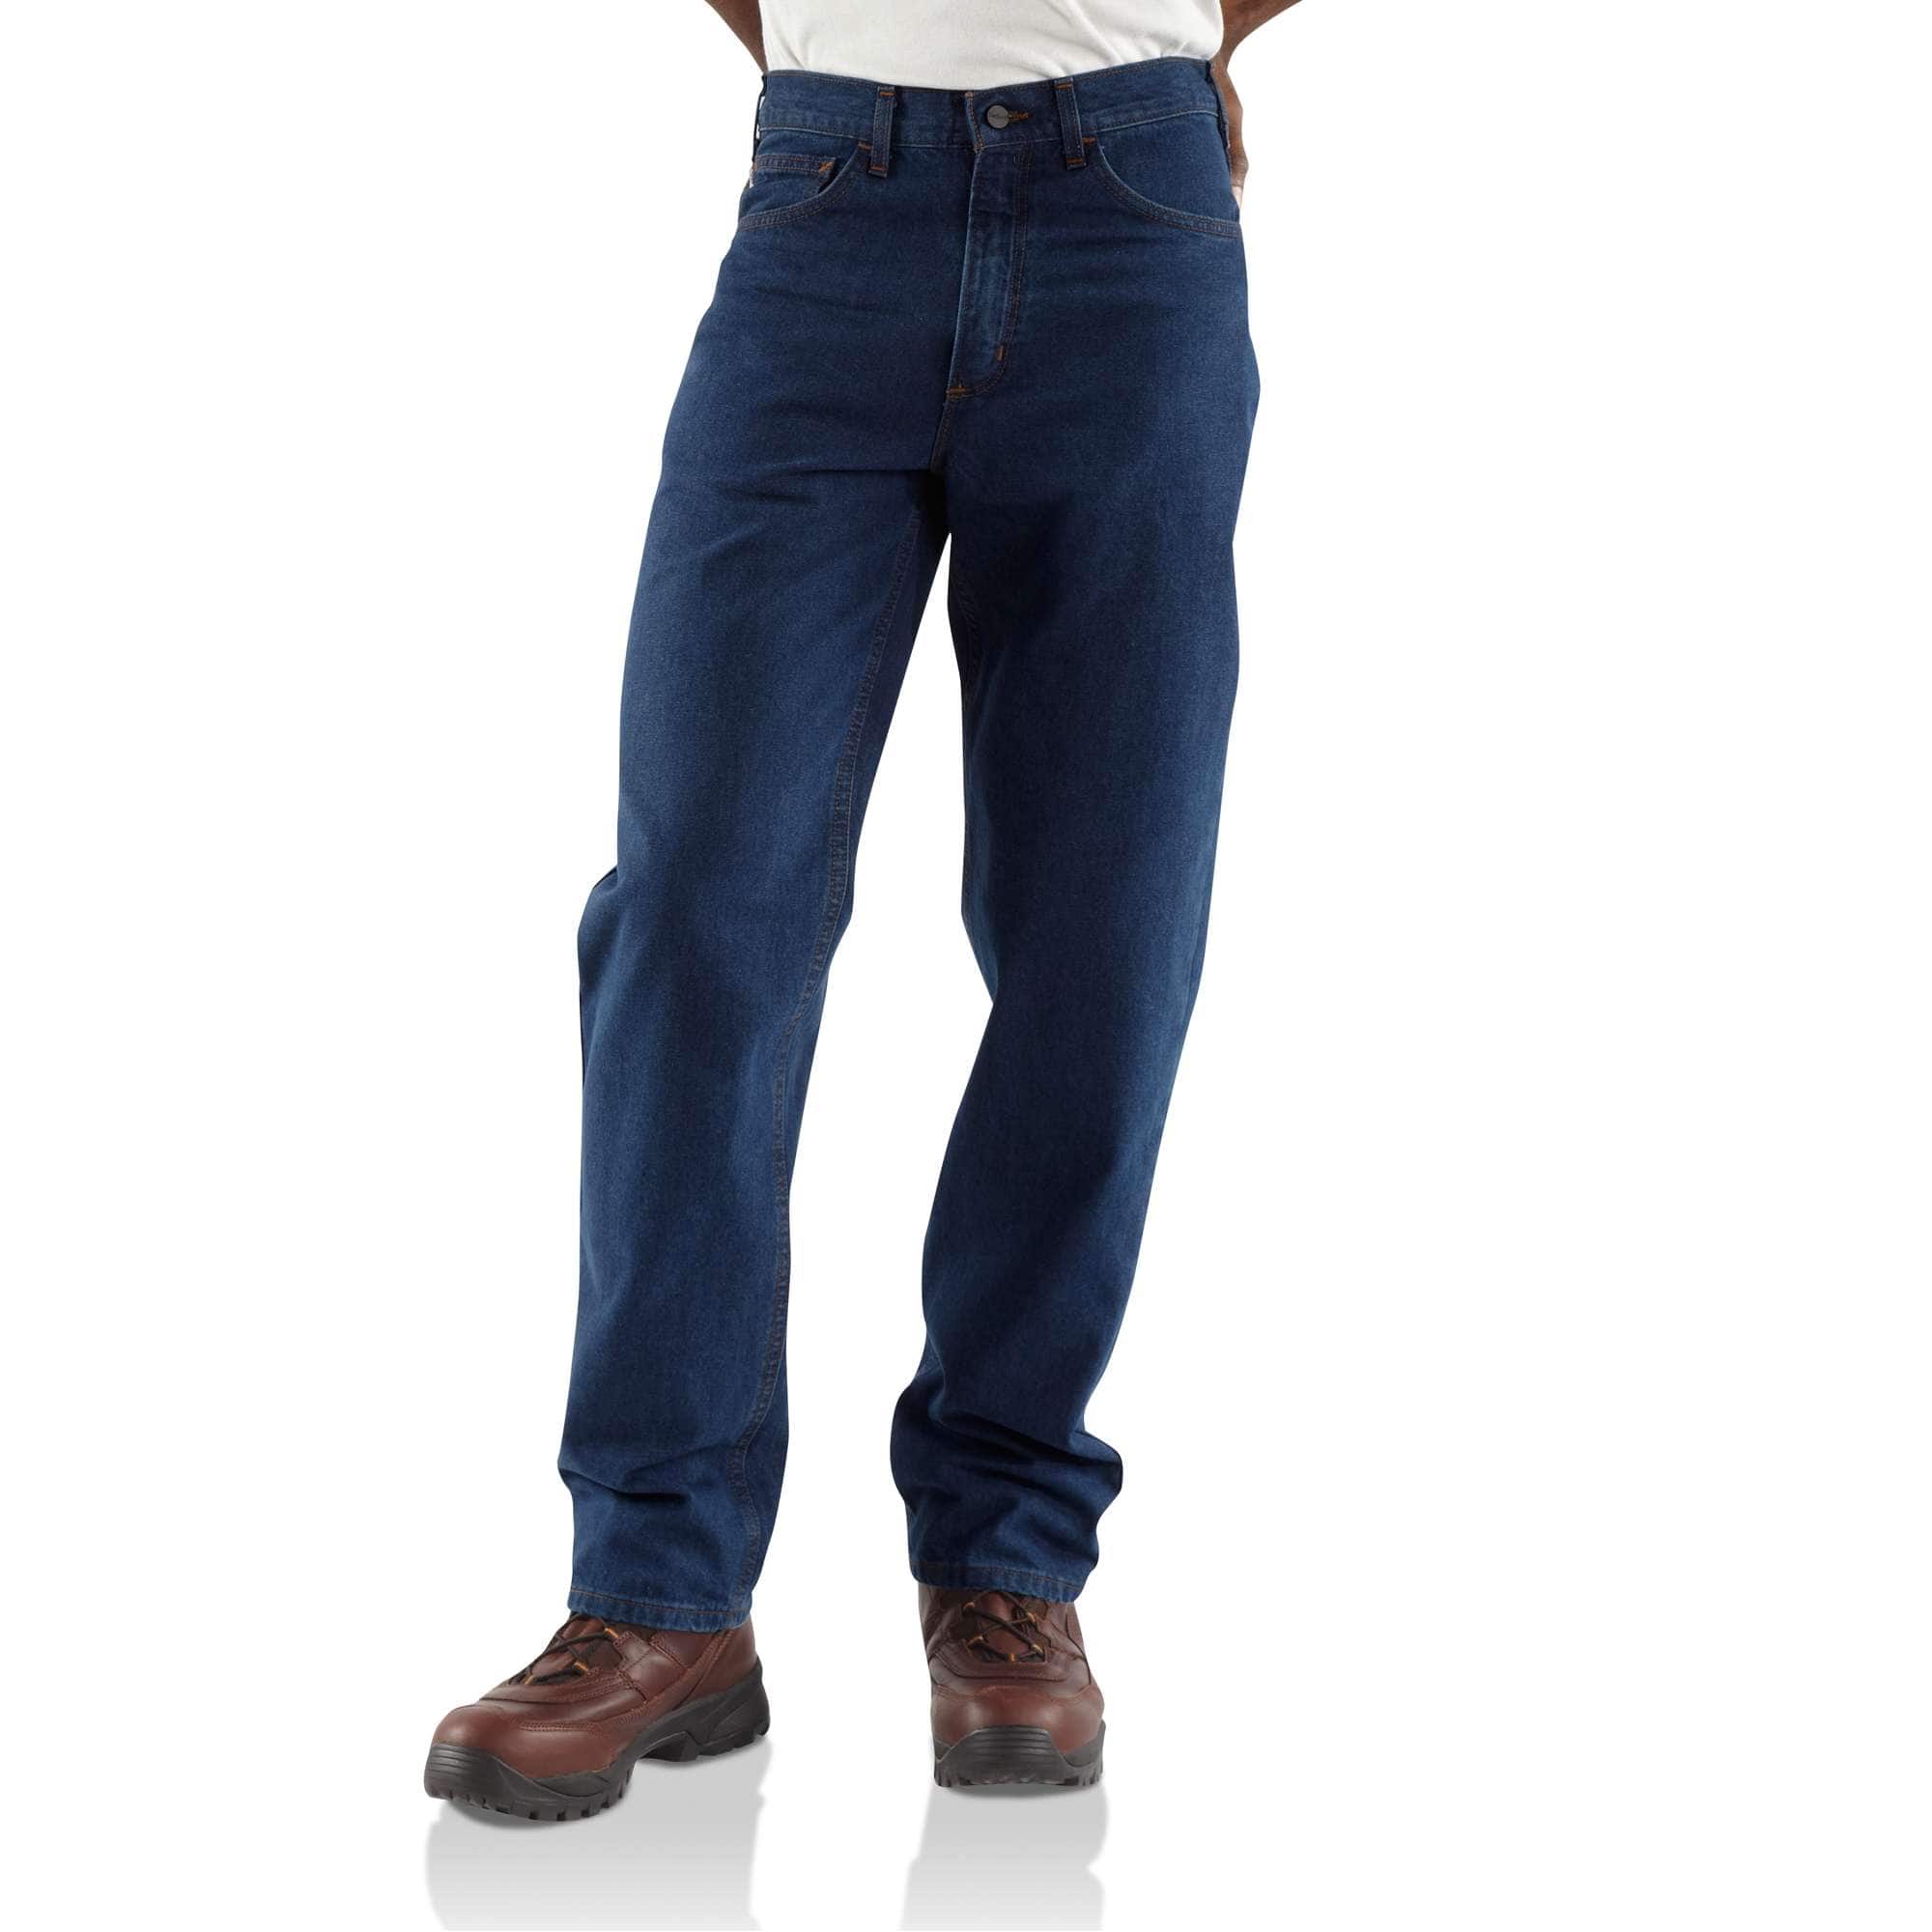 Men's Uniform Work Jeans